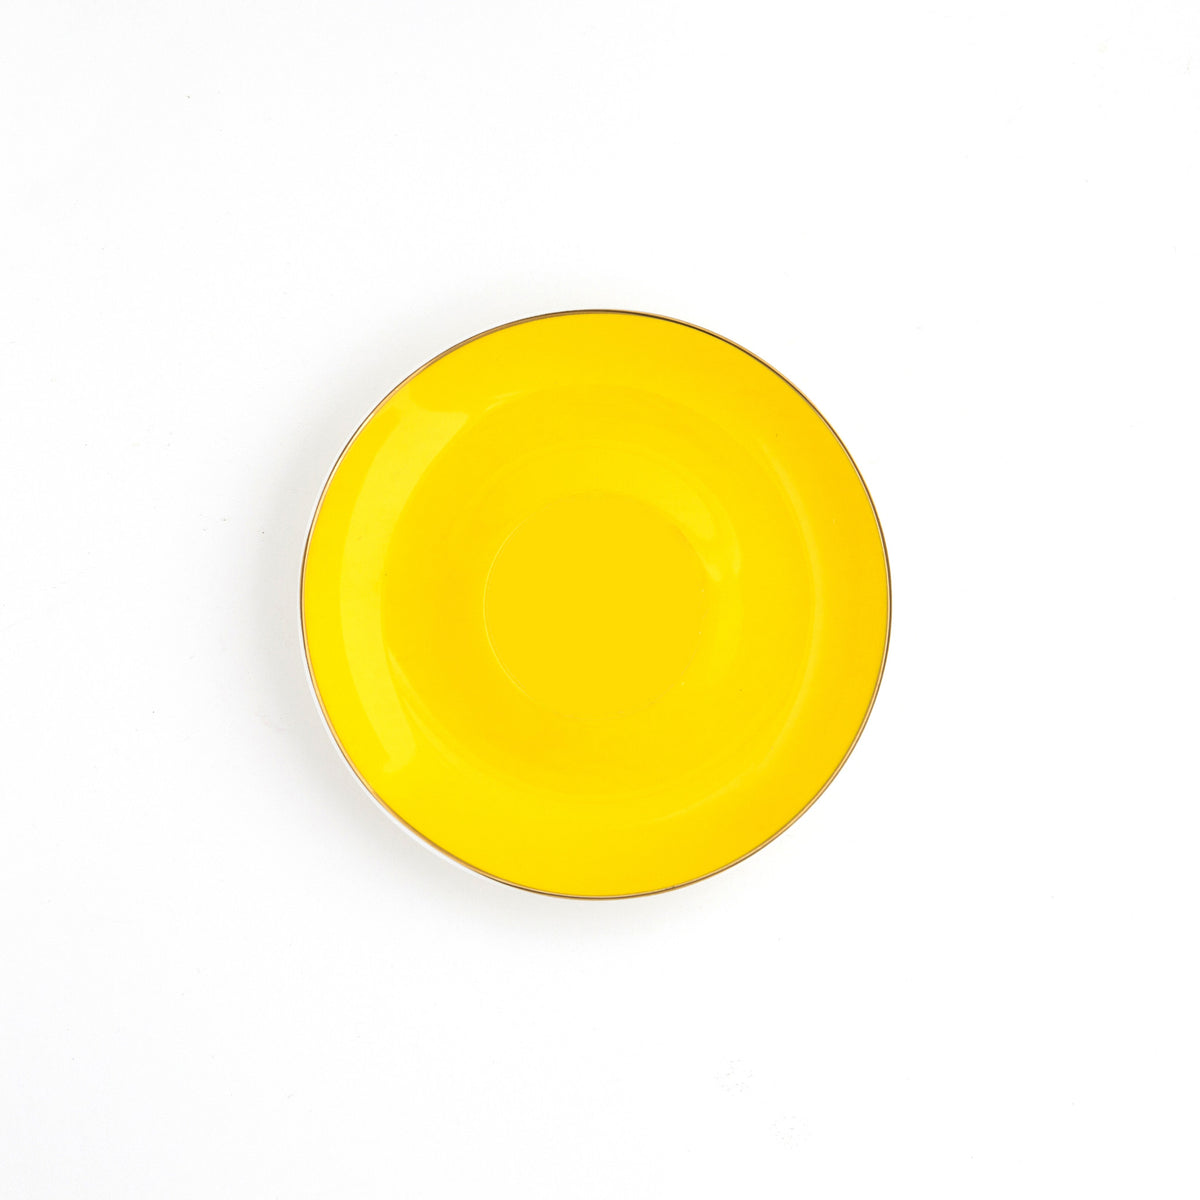 XL Yellow Teacup and Saucer